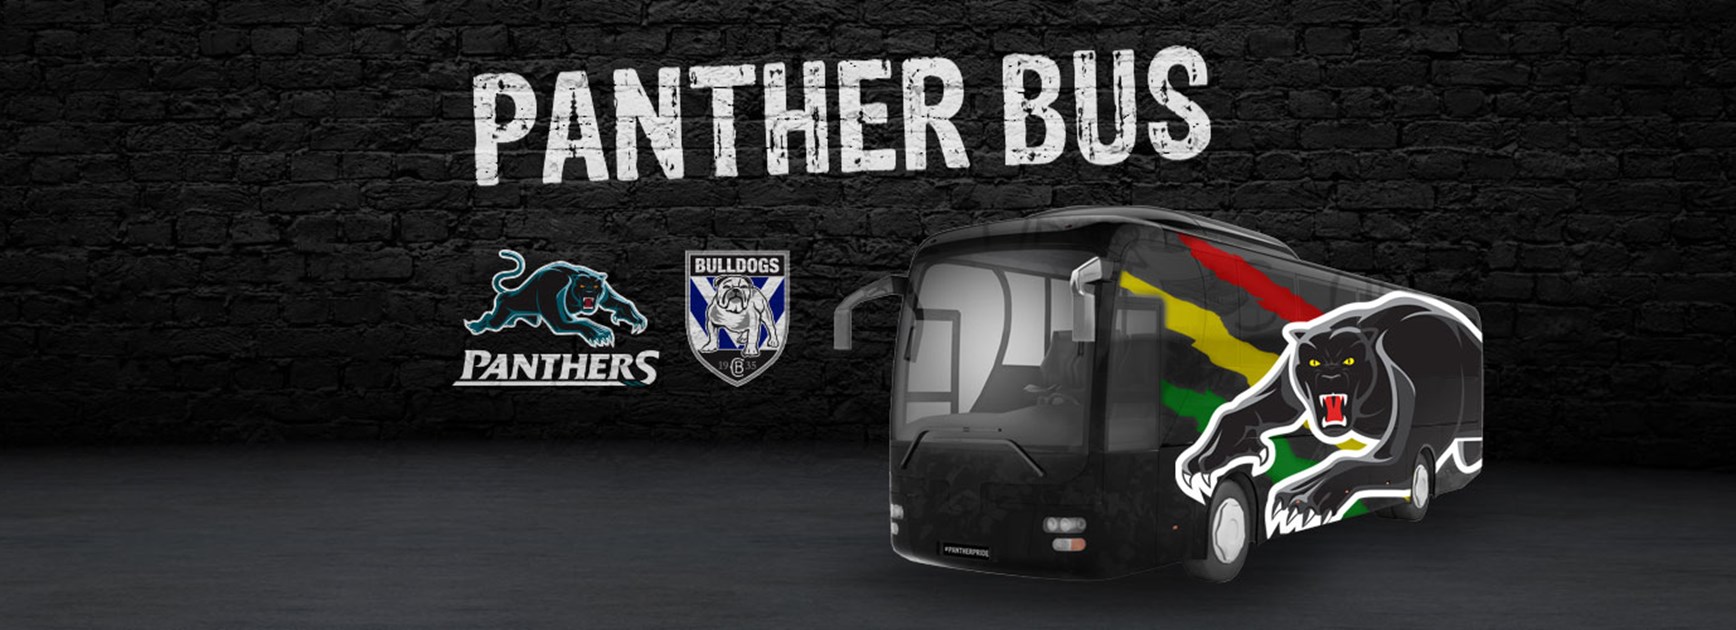 Panther Bus: Round 3